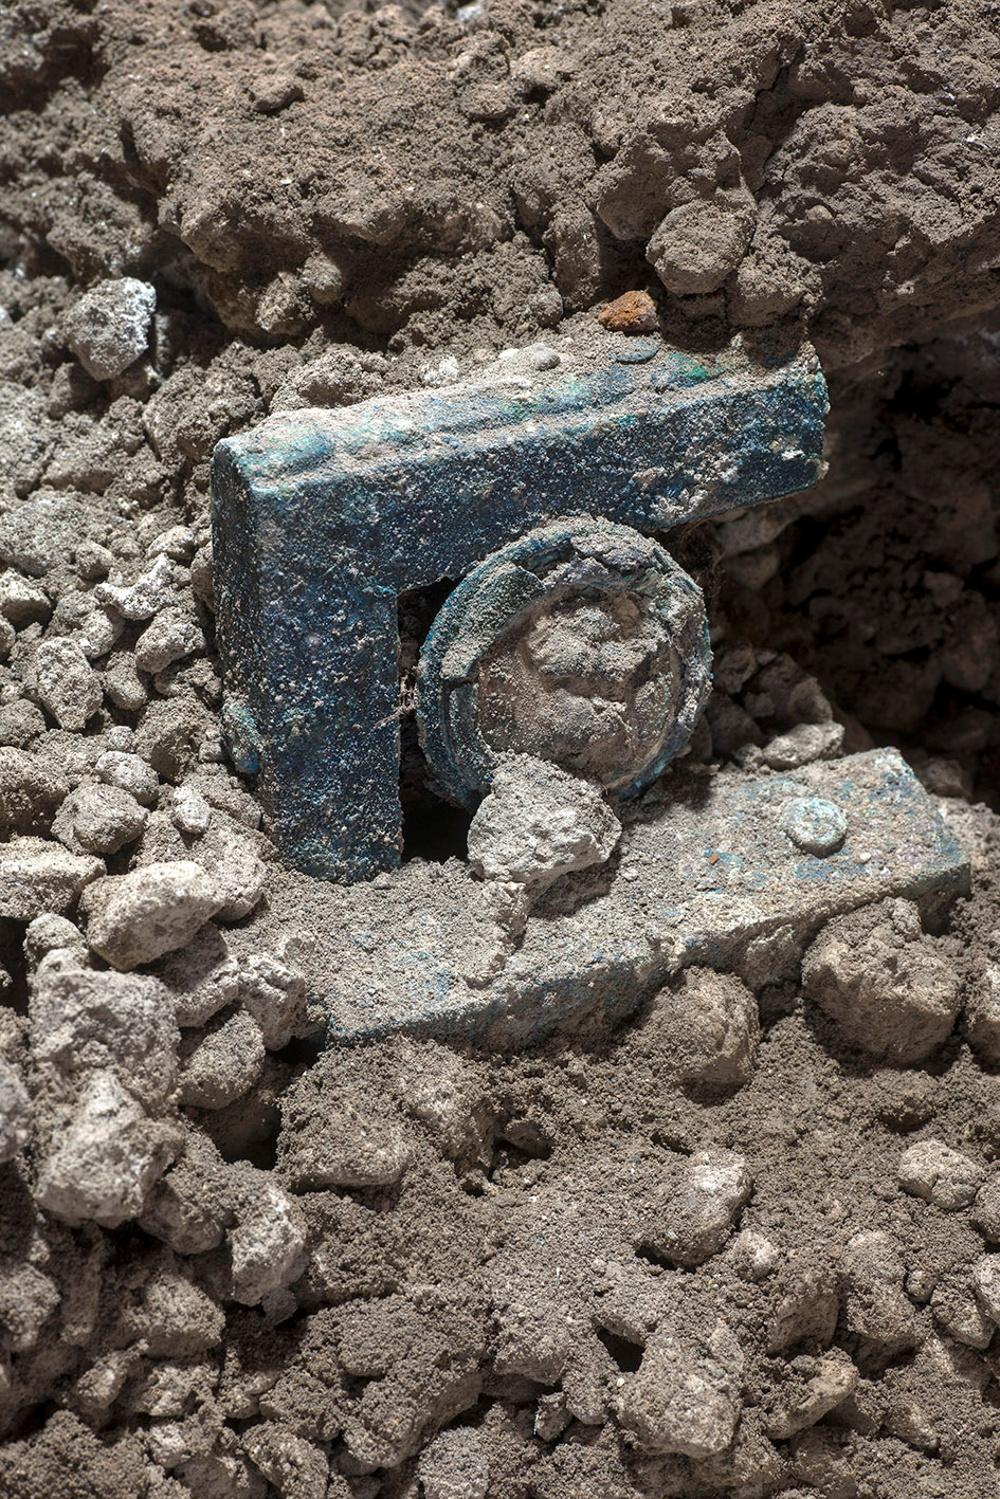 Σπουδαία ανακάλυψη: Εντοπίστηκε ρωμαϊκό άρμα που ήταν σχεδόν άθικτο κοντά στην Πομπηία (φώτο)